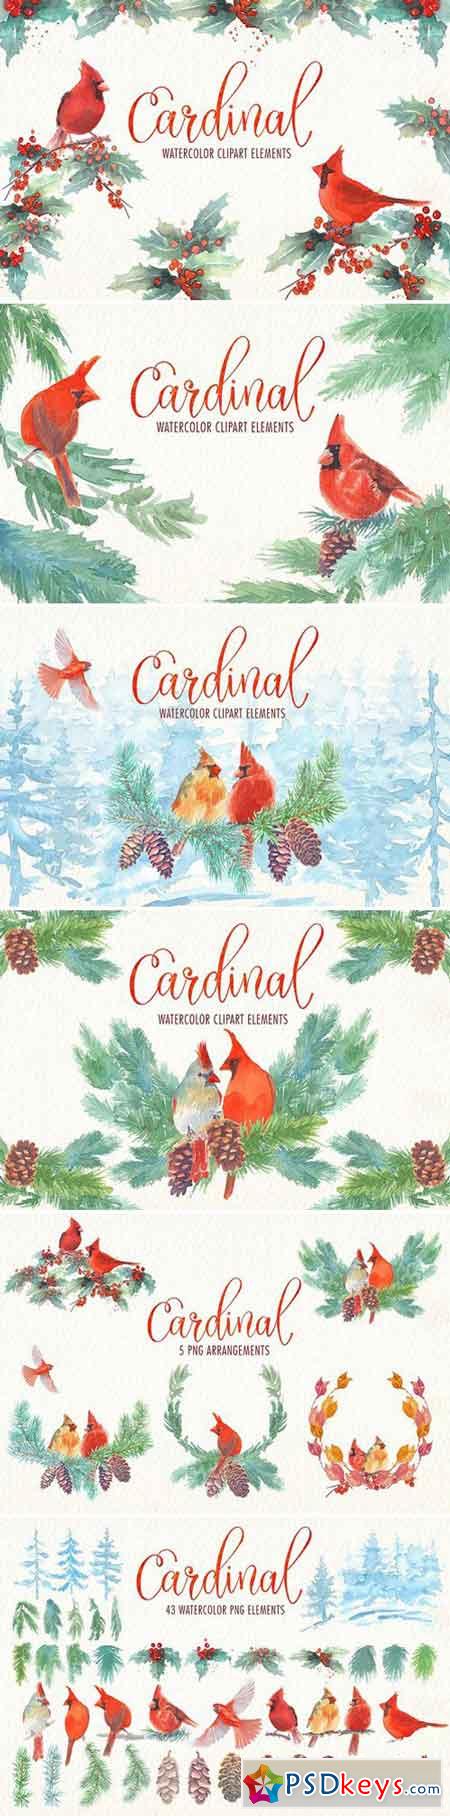 Cardinal bird watercolor clipart set 1870858